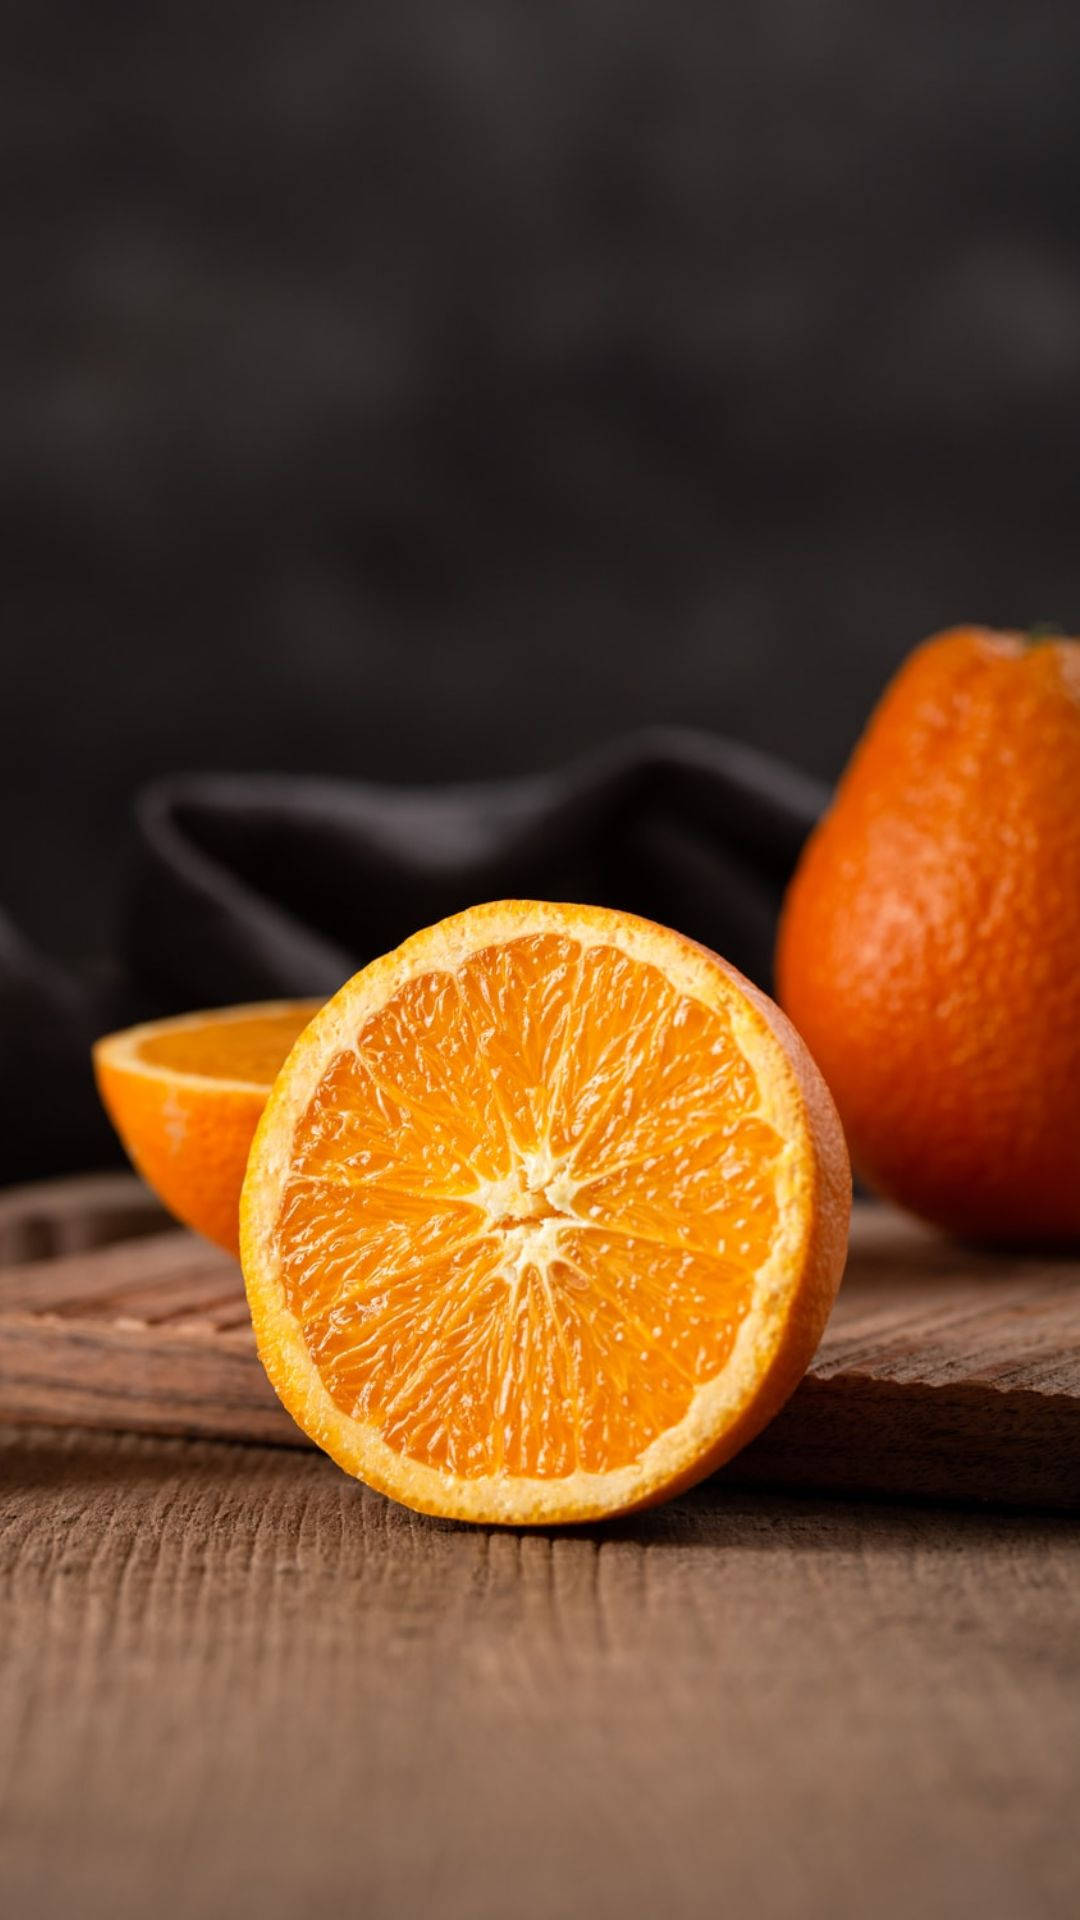 Sliced Orange Fruit On Wood